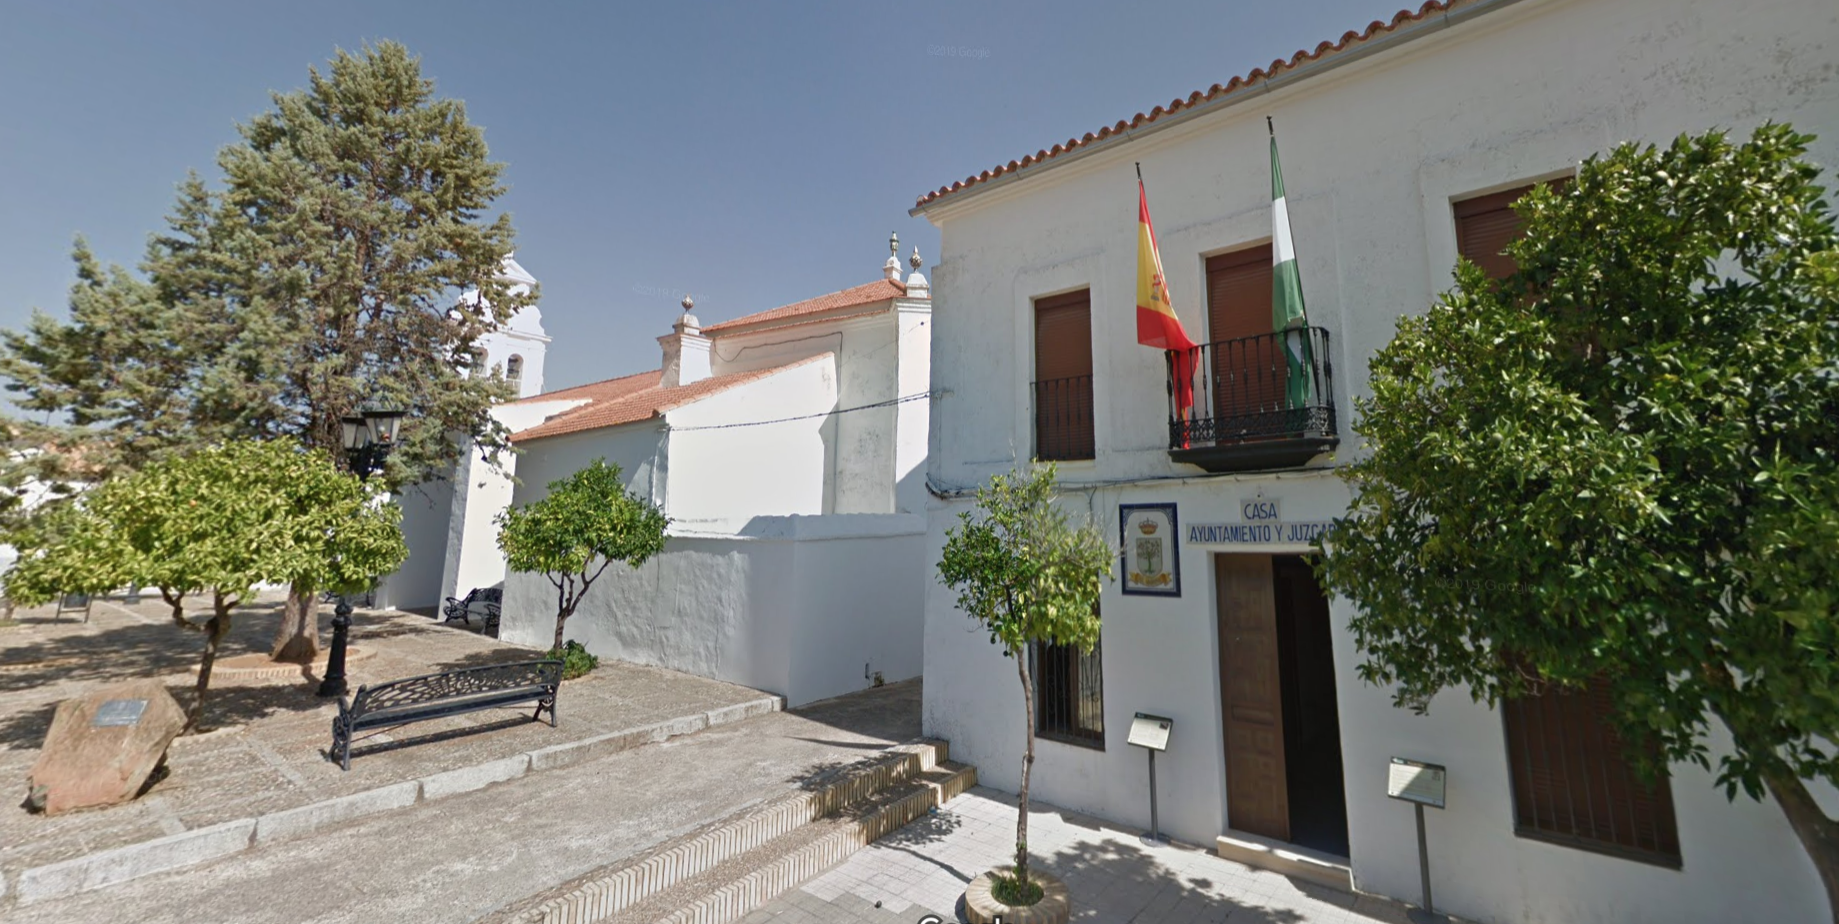 El Ayuntamiento de El Madroño, en una imagen de Google Maps.